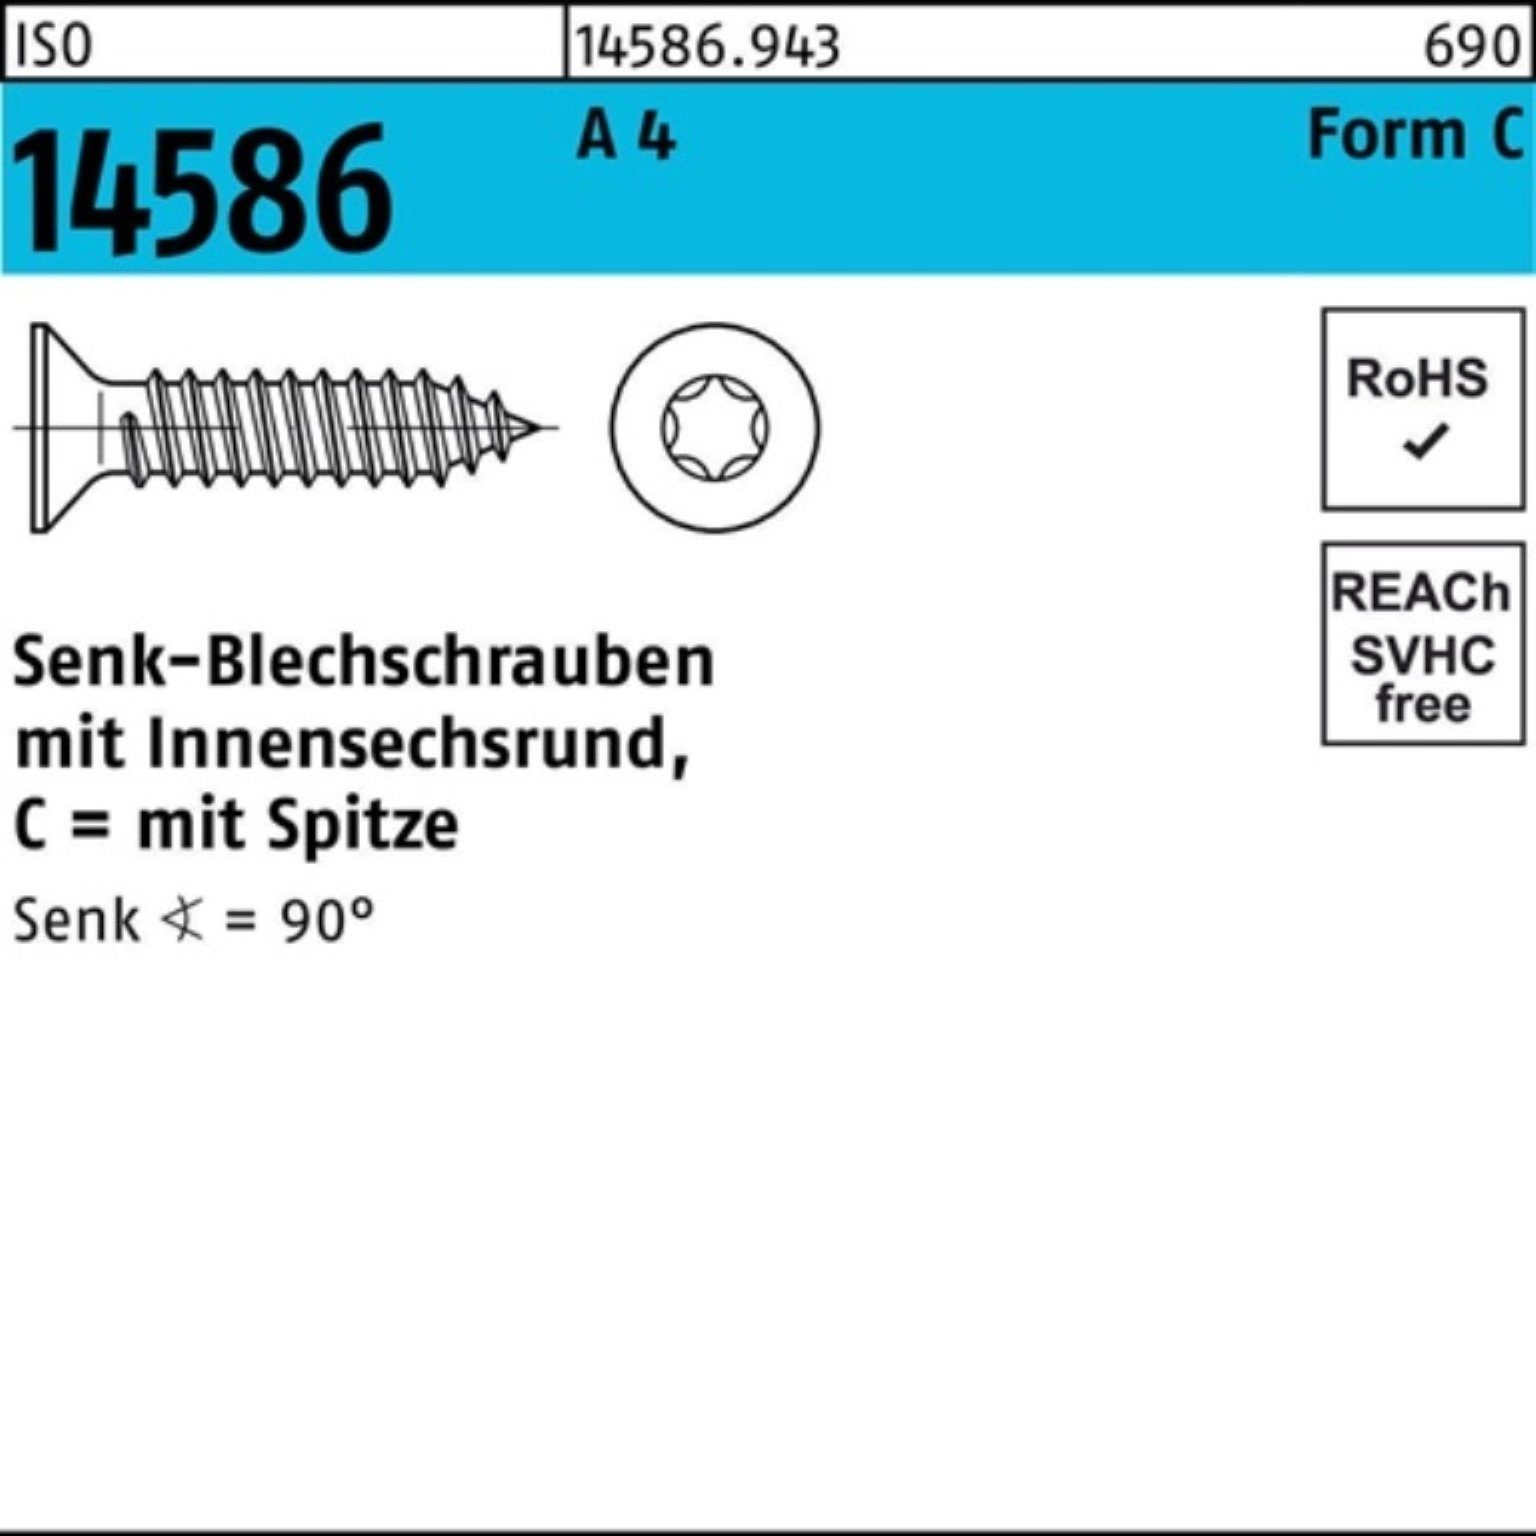 Reyher Schraube 500er Pack Senkblechschraube ISO 14586 ISR/Spitze 4,2x 19-T20 A 4 500